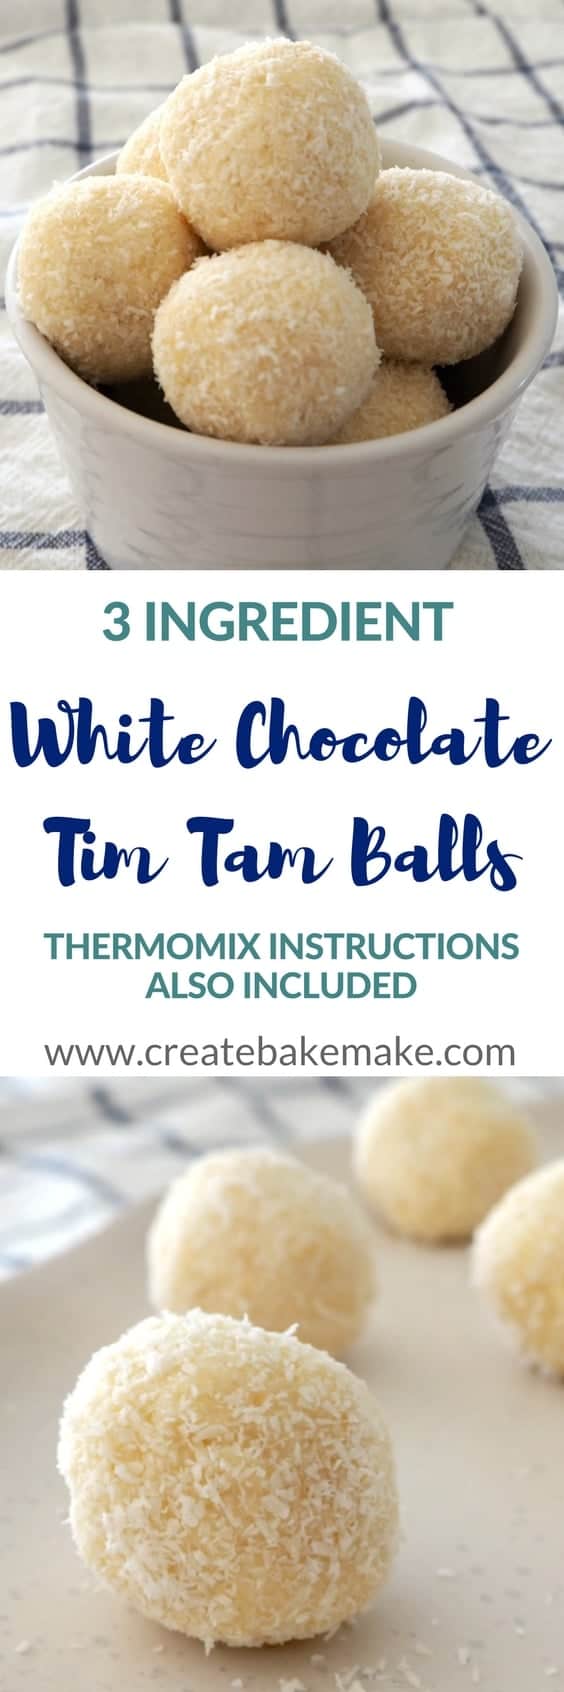 3 Ingredient White Chocolate Tim Tam Balls